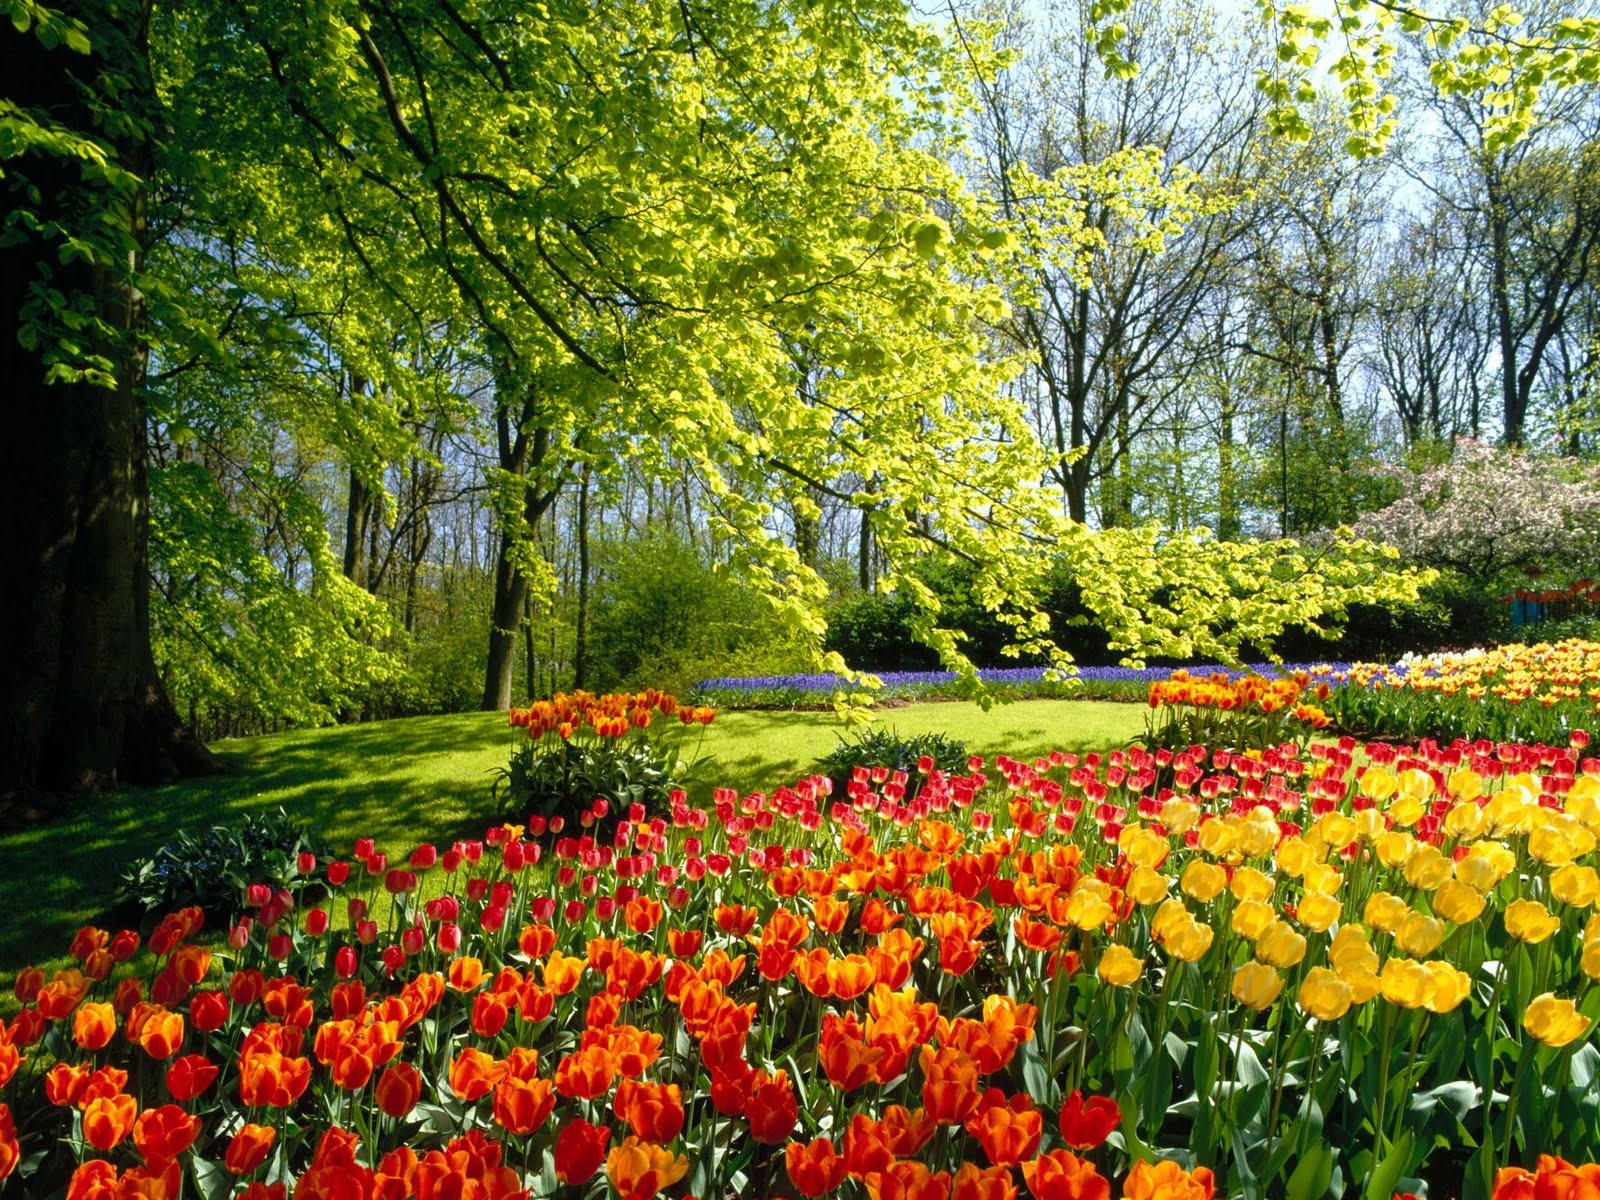 5 flores para una casa preciosa en primavera